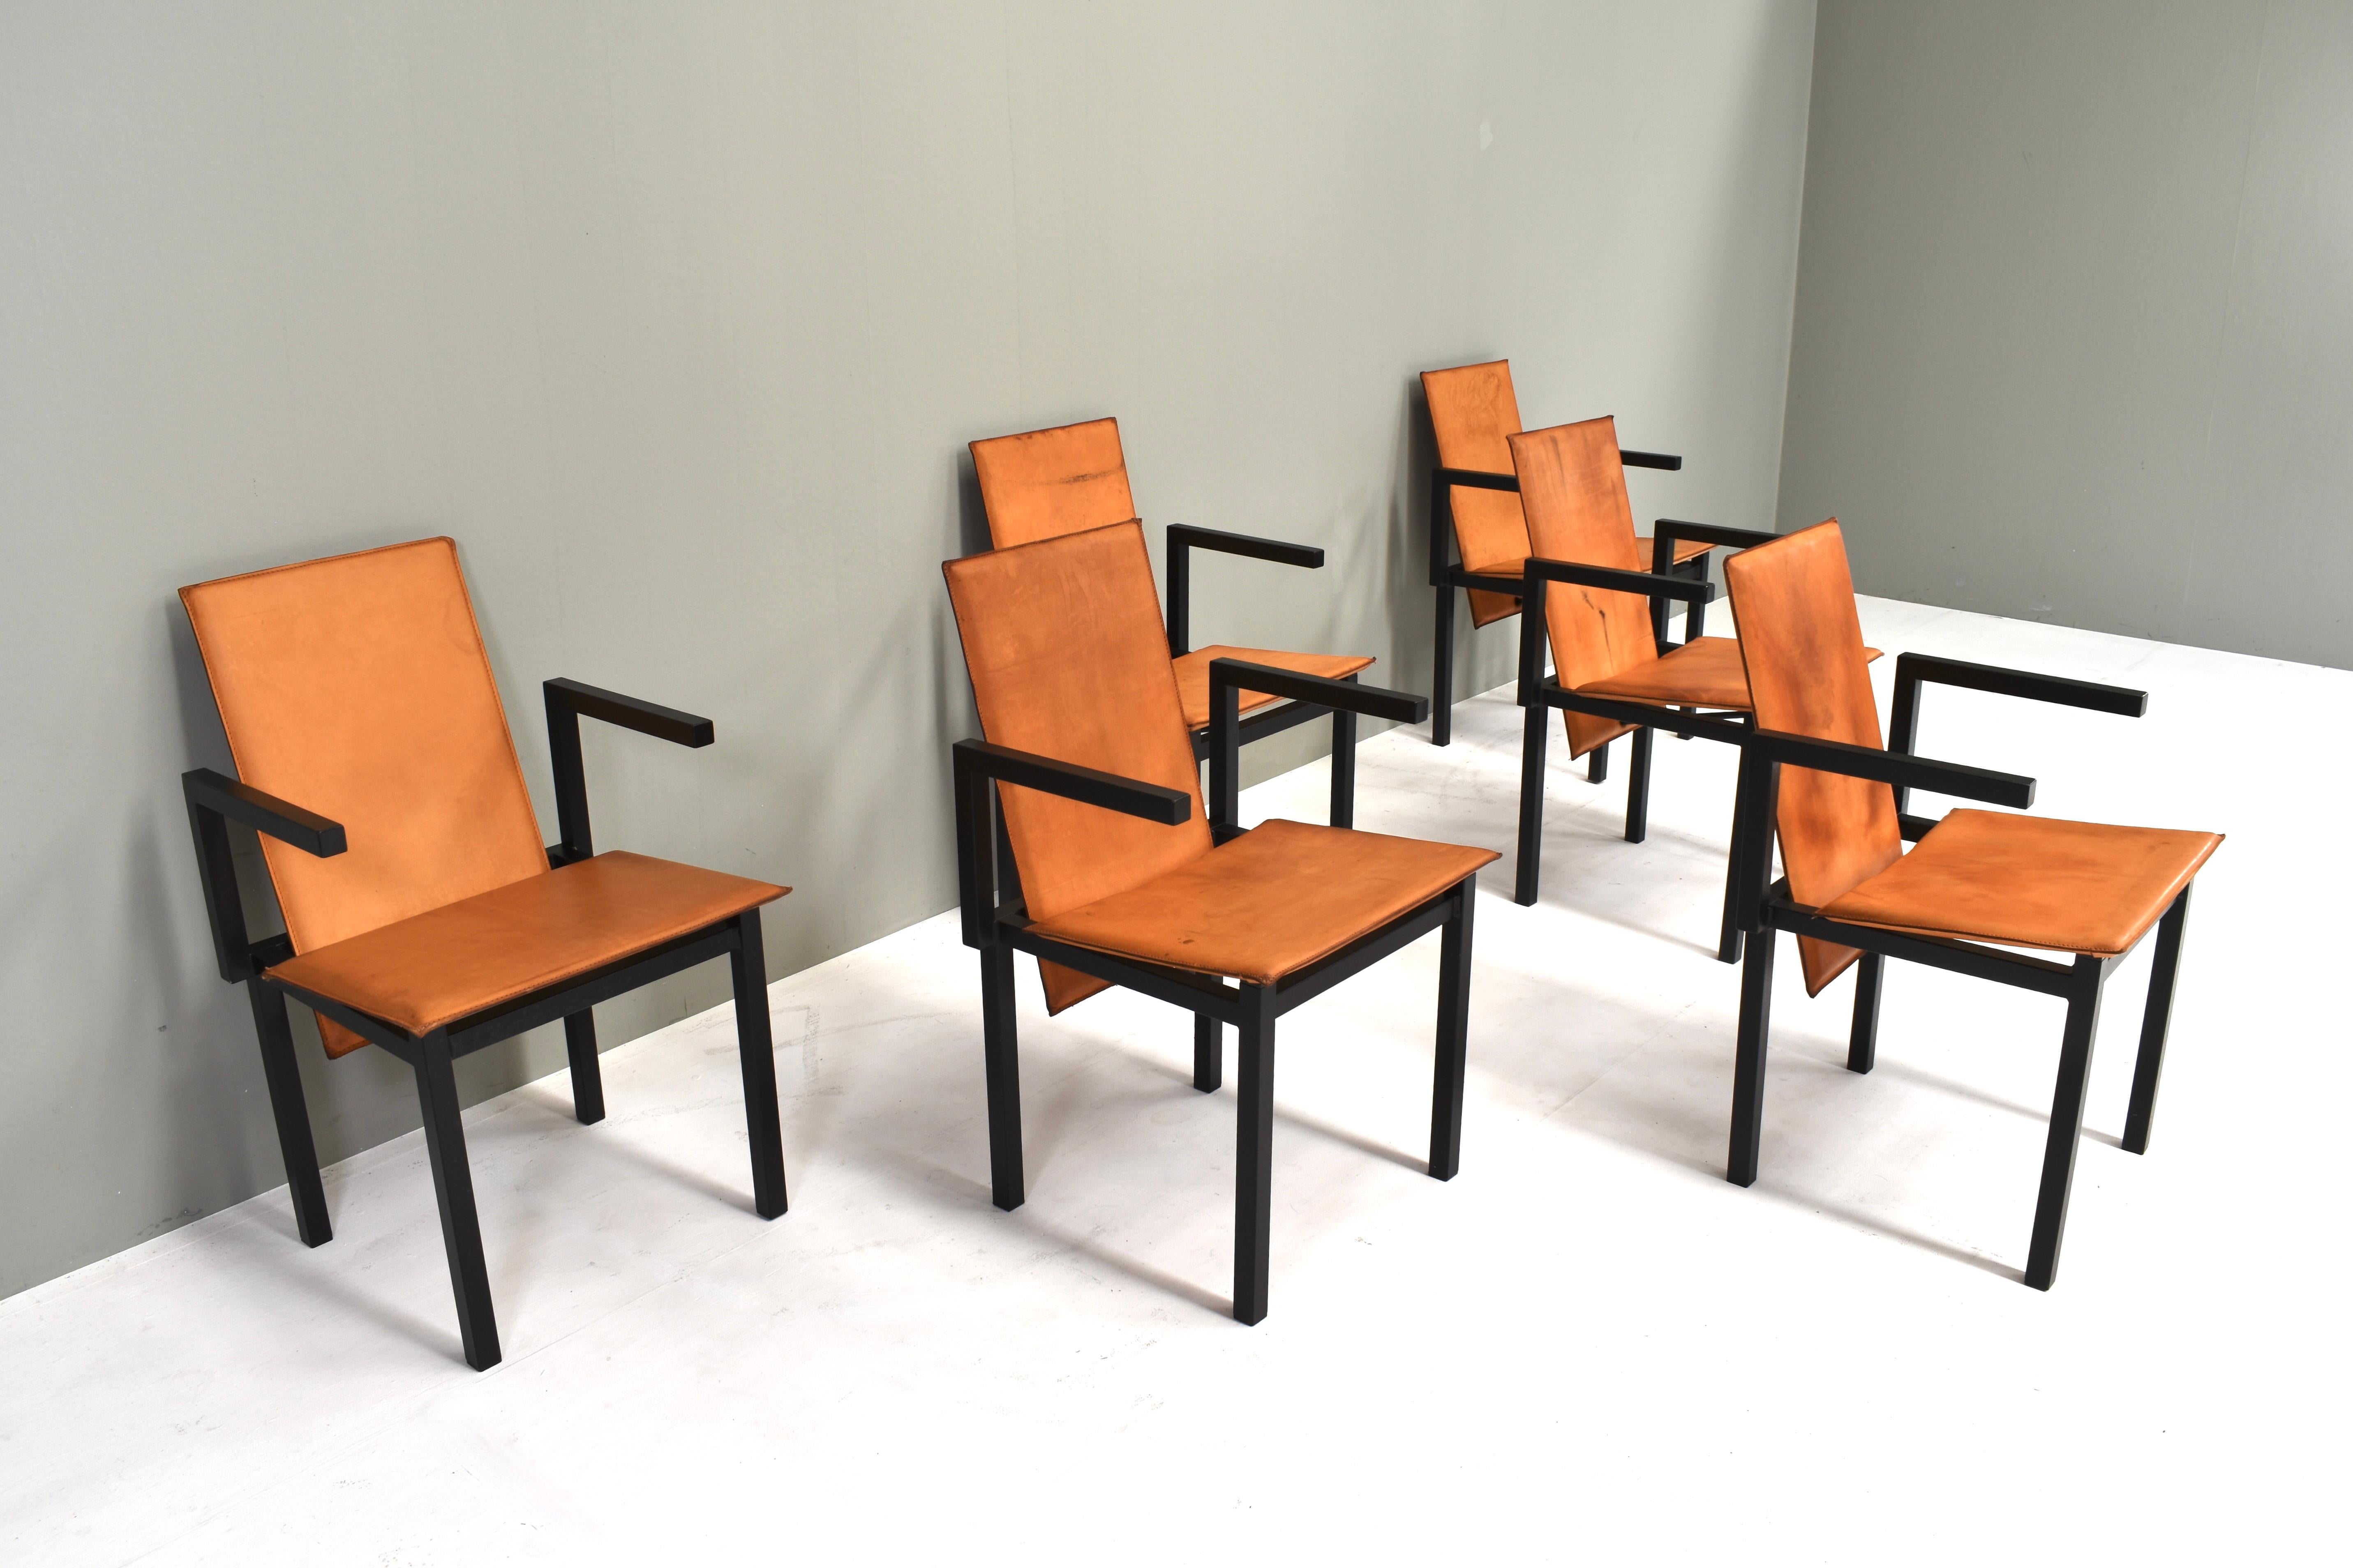 Einzigartiges Set aus sechs minimalistischen Esszimmerstühlen aus schwarz beschichtetem Metall und cognacfarbenem Leder. Dies ist ein einzigartiges Set, das auf Bestellung oder als Prototyp hergestellt wird.
Sie stammen aus dem Groninger Kunstmuseum